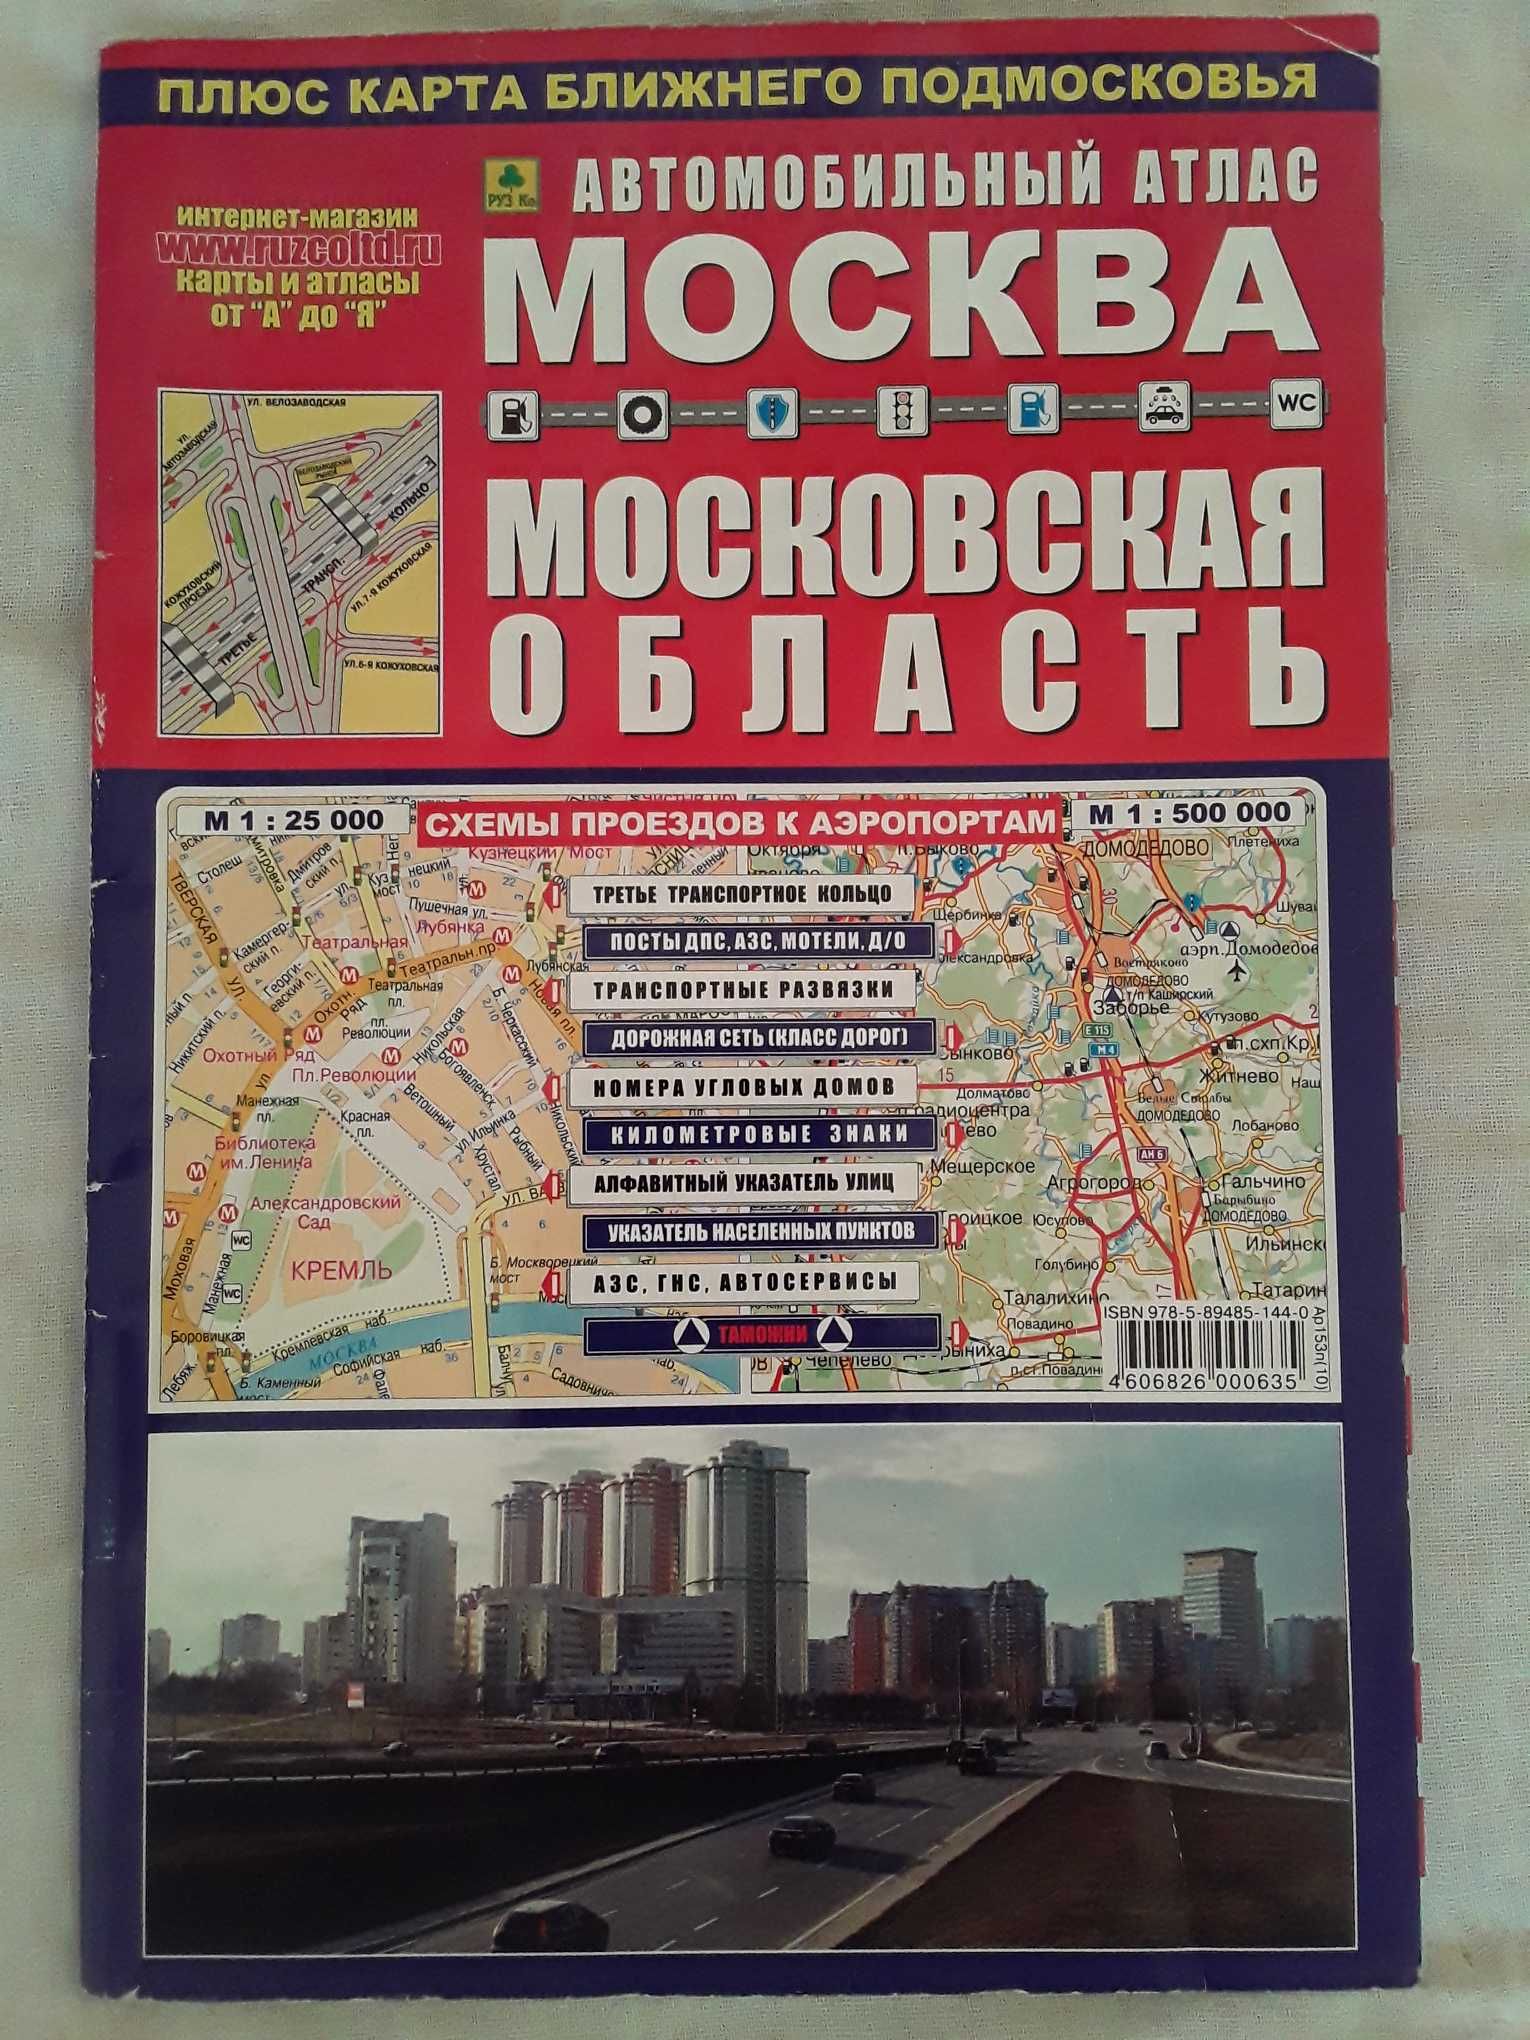 Атласы Москвы и области,Нижнего Новгорода и области,Краснодара и края.